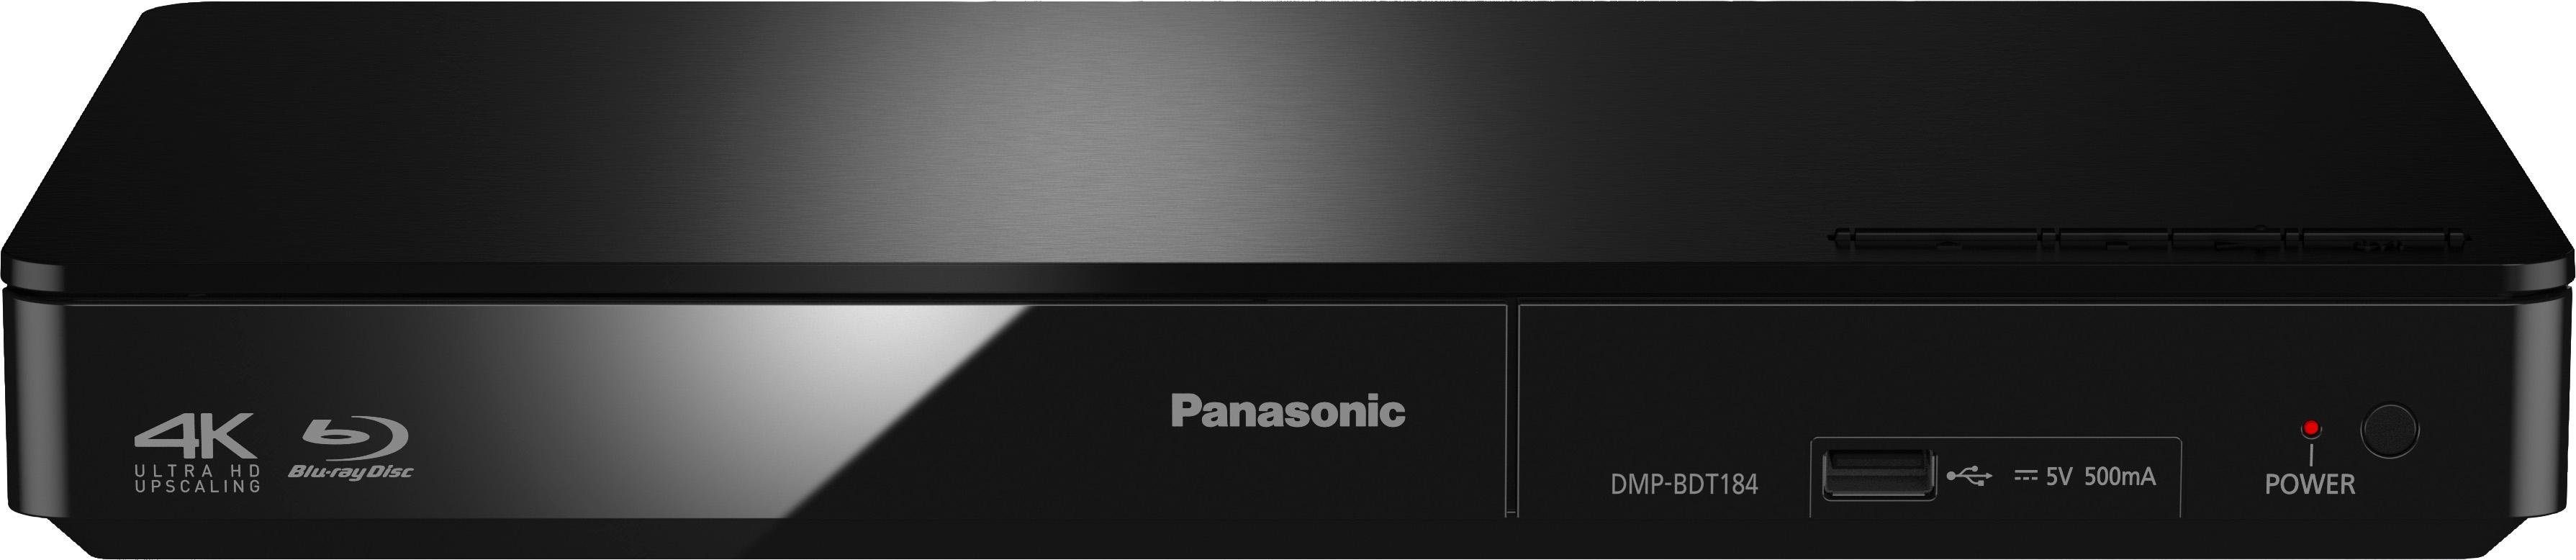 Panasonic DMP-BDT184 / DMP-BDT185 Blu-ray-Player Upscaling, (Ethernet), schwarz (LAN Schnellstart-Modus) 4K